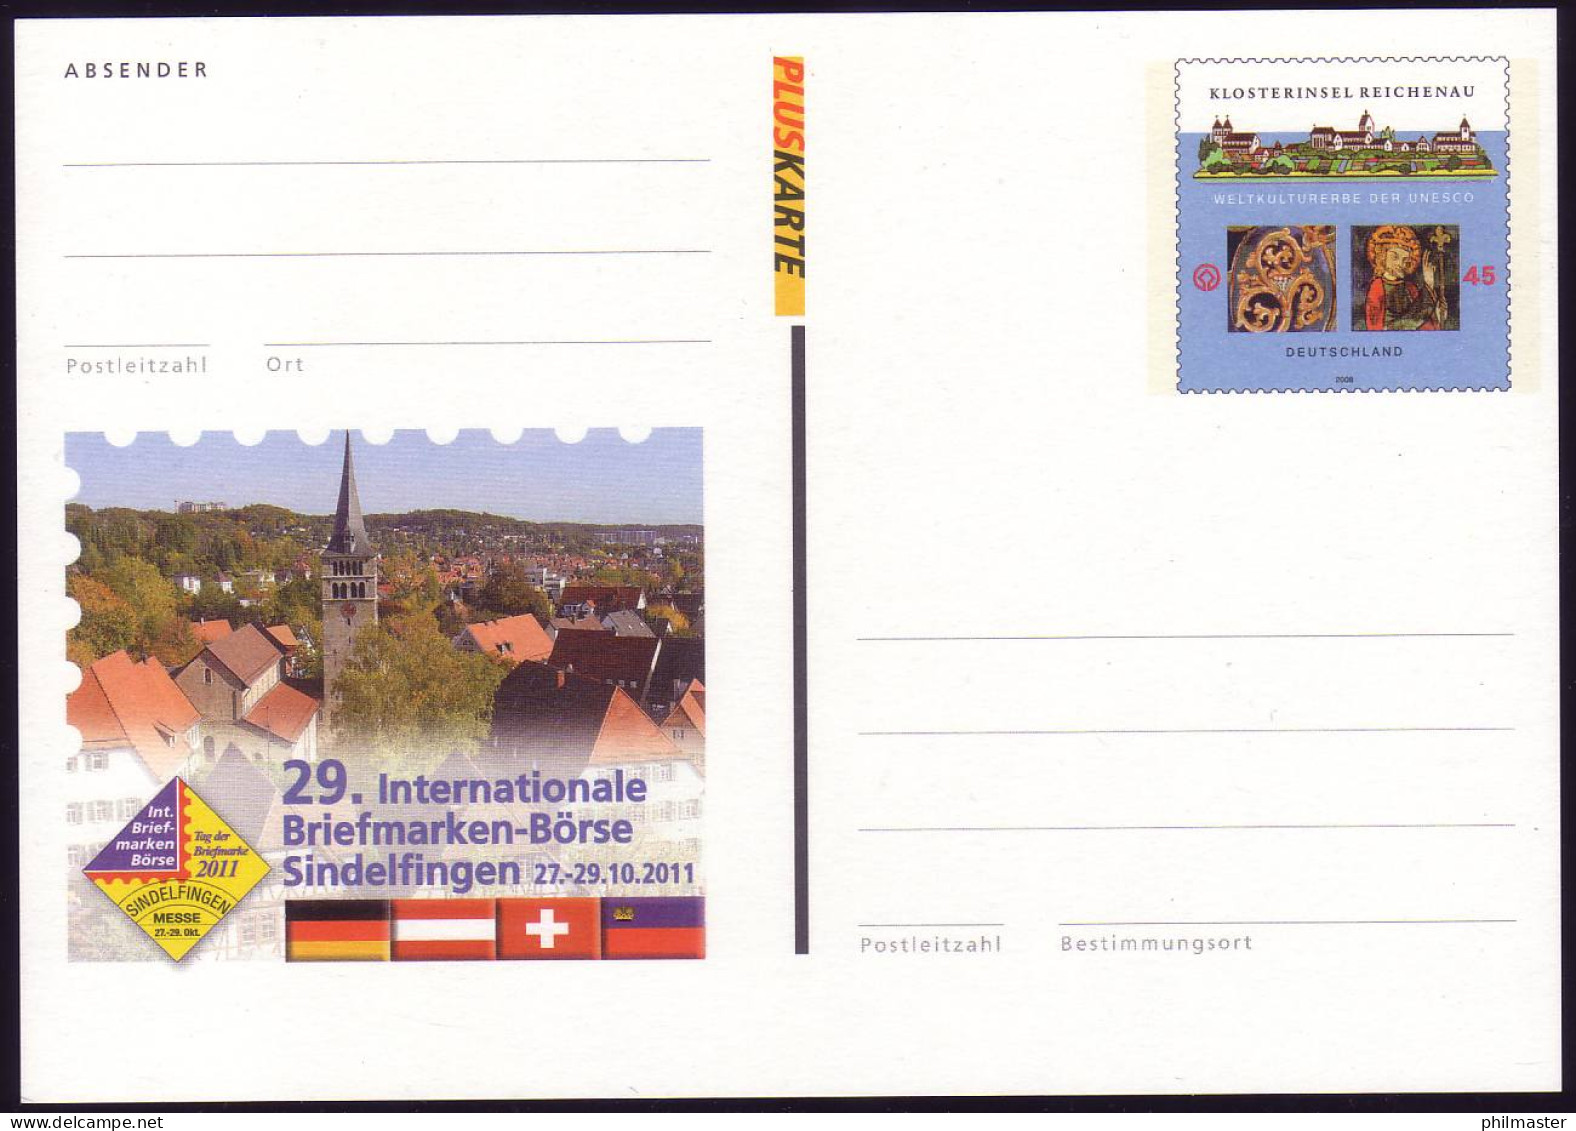 PSo 115 Briefmarken-Börse Sindelfingen 2011, Postfrisch - Postkarten - Ungebraucht